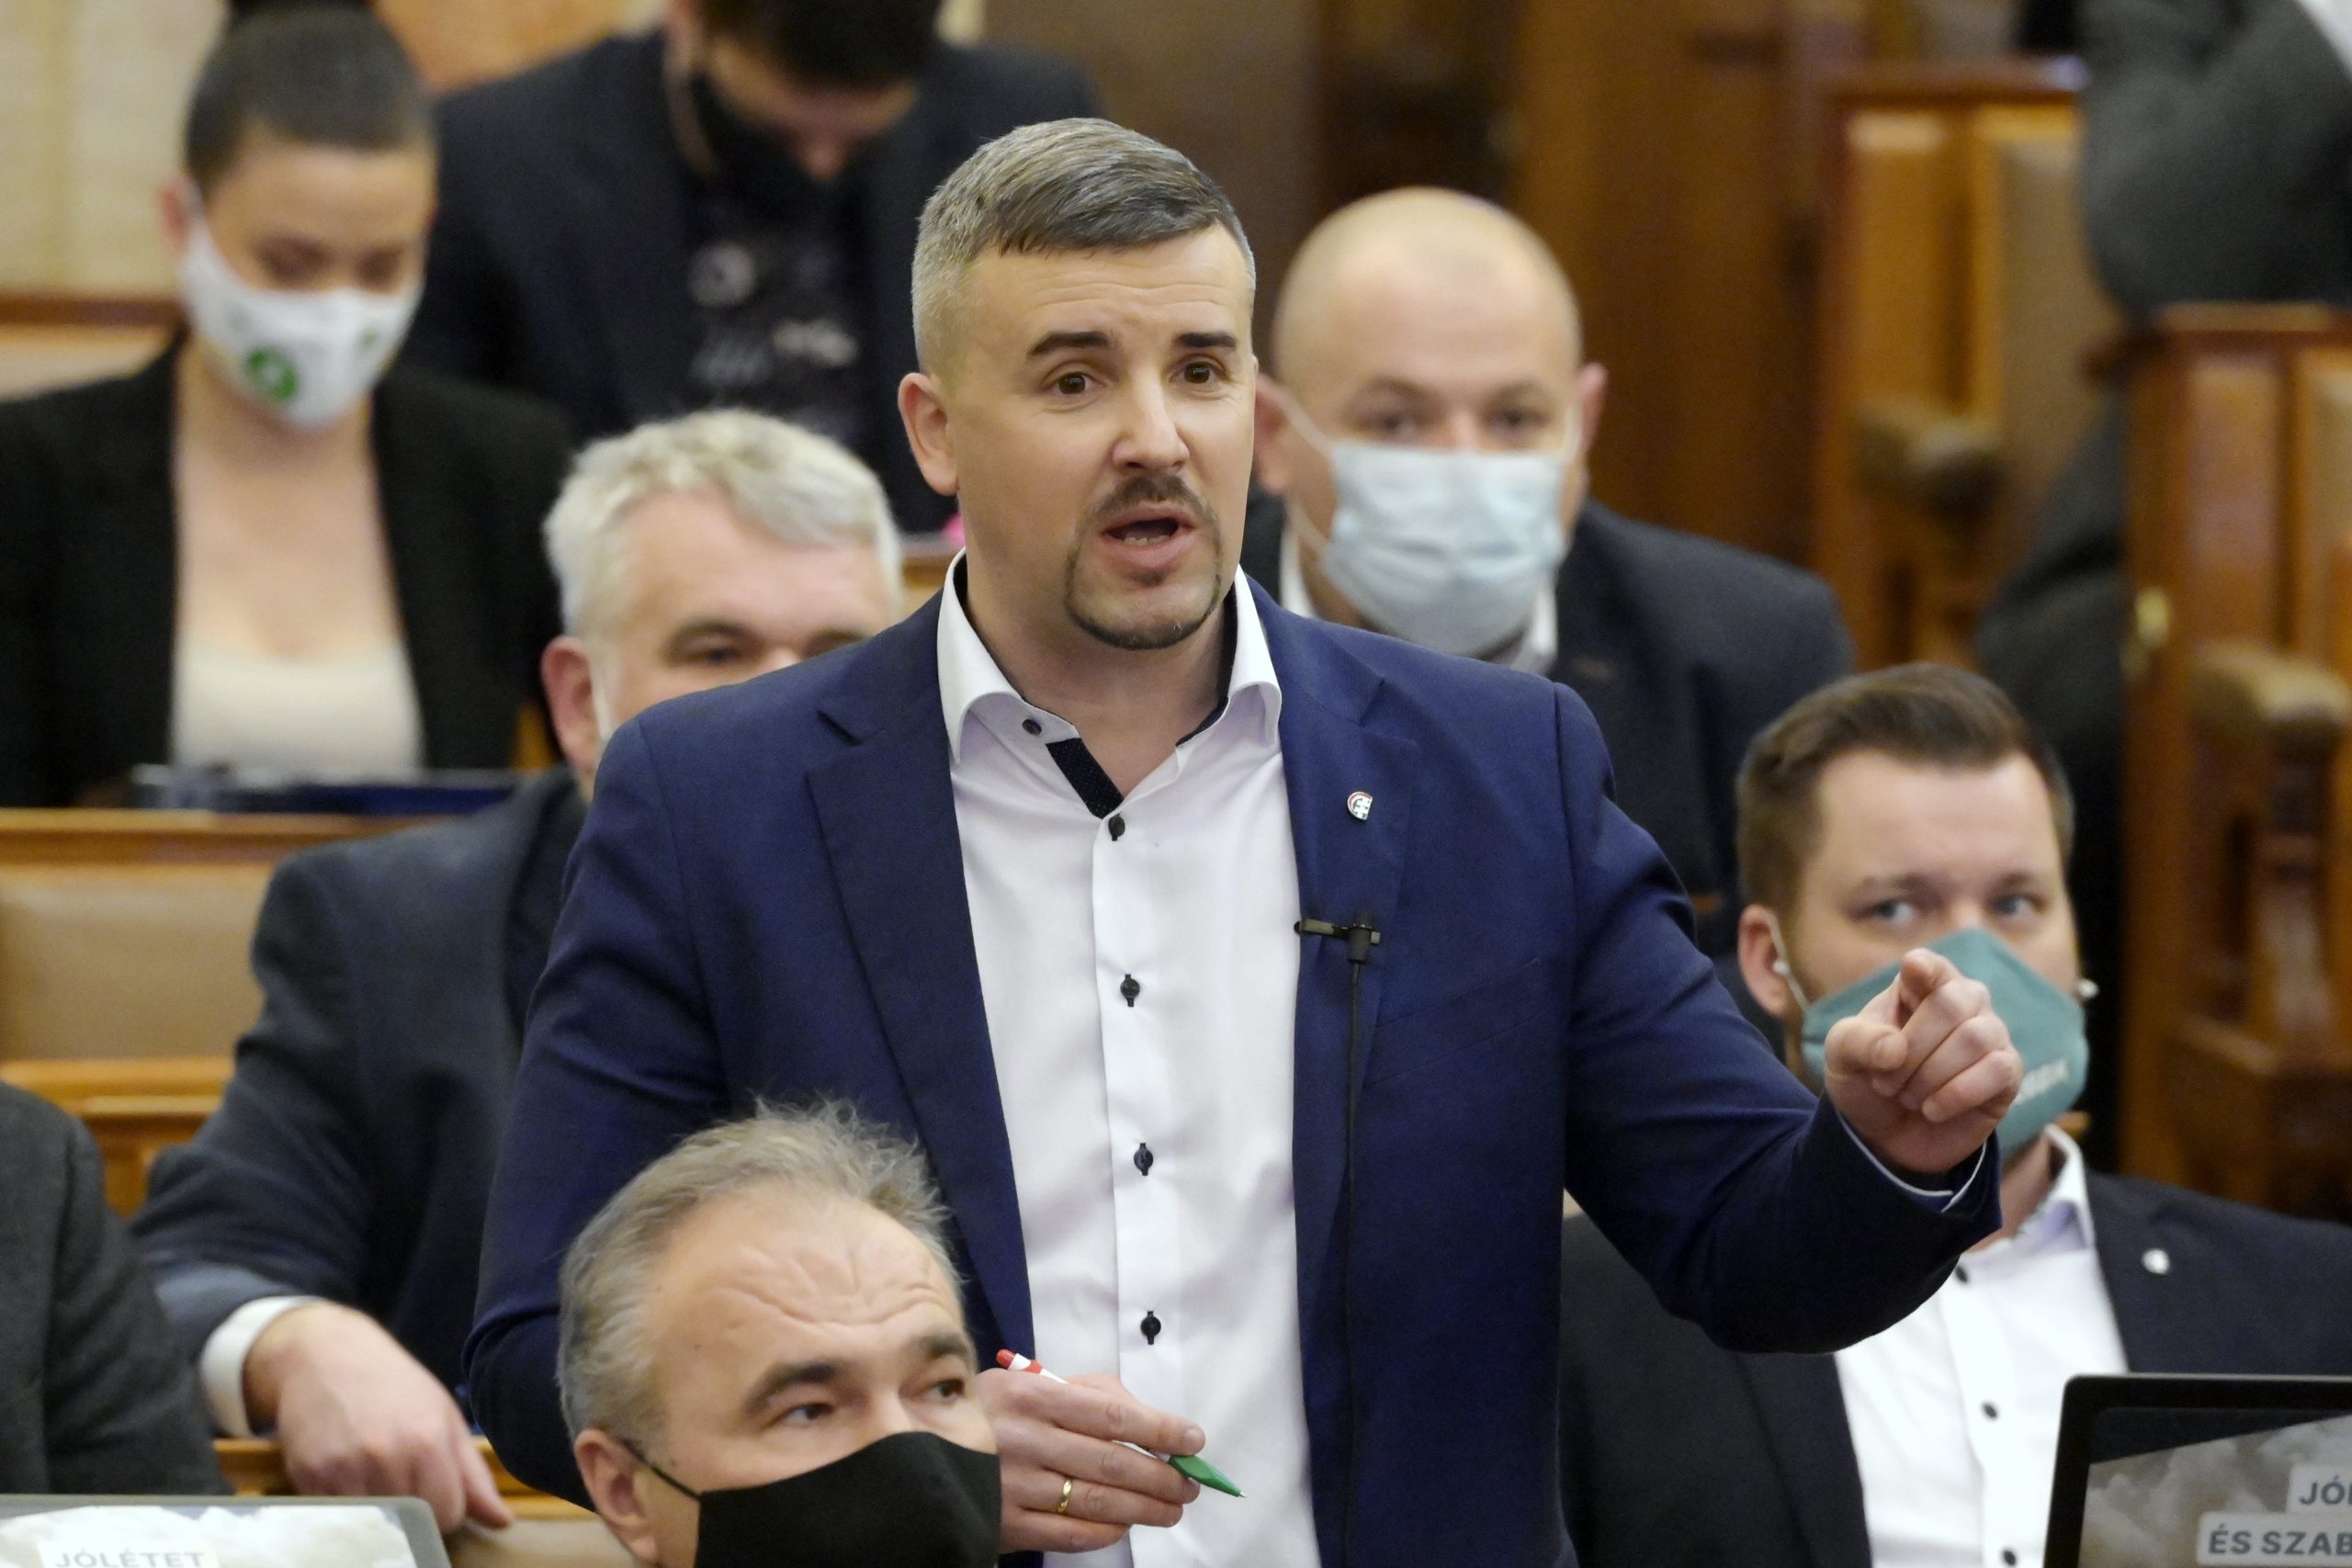 Oppositionelle Jobbik im Parlament: 